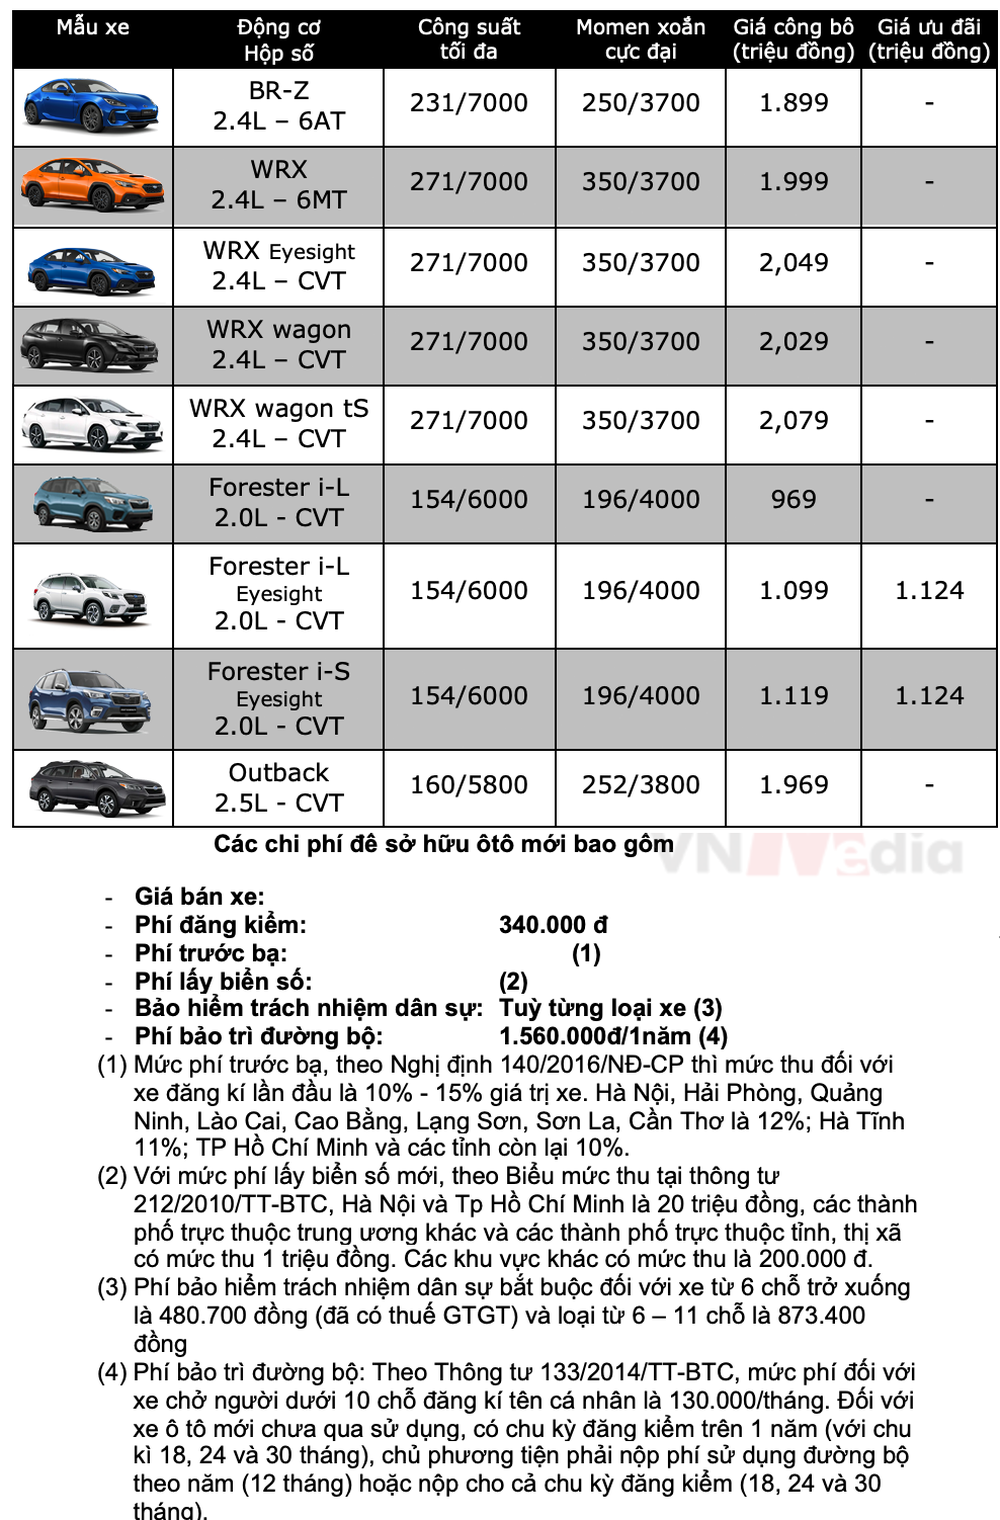 Bảng giá xe Subaru tháng 6: Subaru Forester giảm hơn 120 triệu đồng - Ảnh 2.